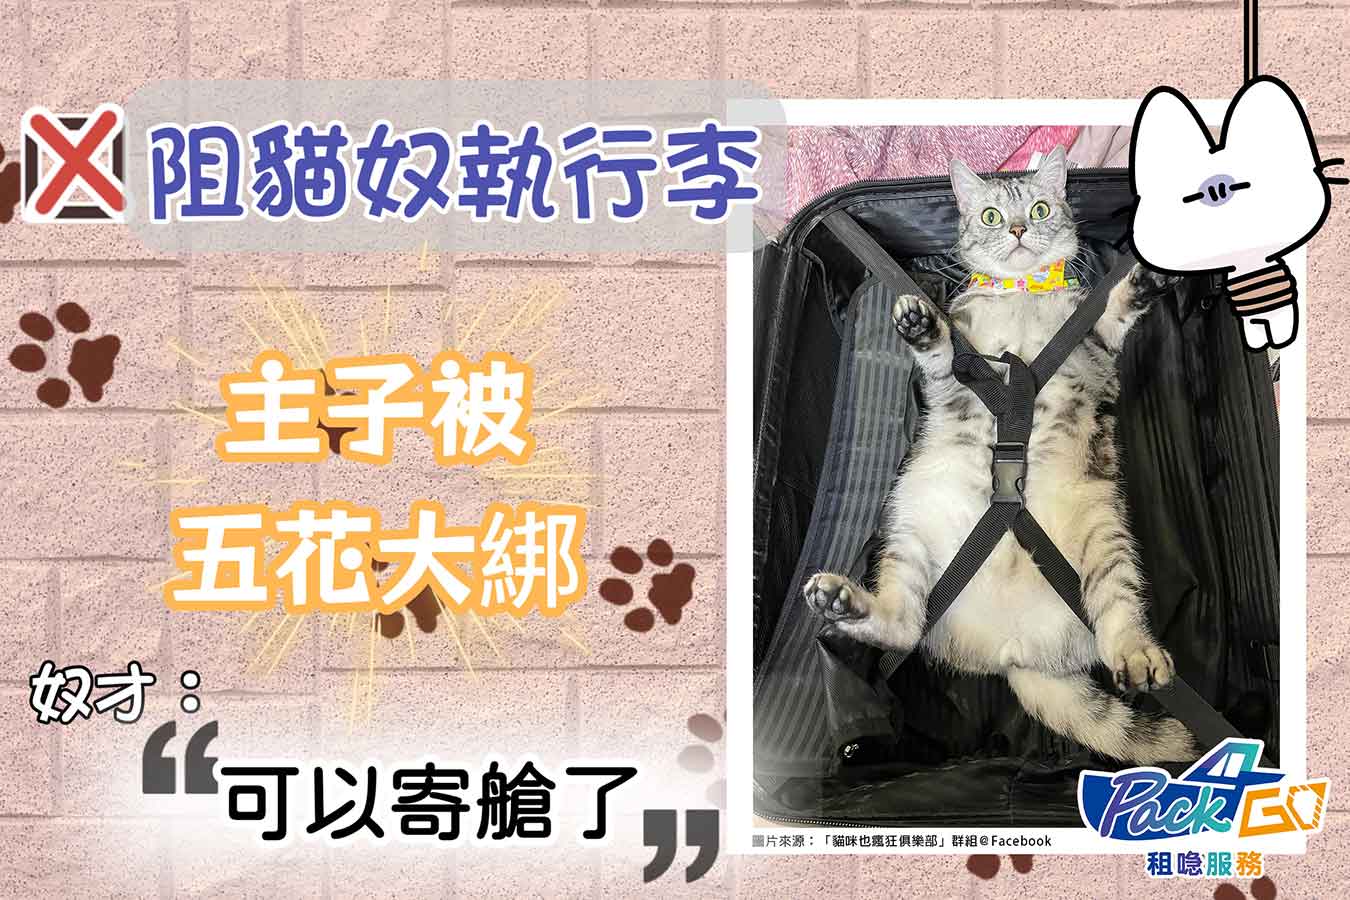 貓主子大字型綁行李箱內｜網民爆笑回應「想起絕育時被支配的恐懼」